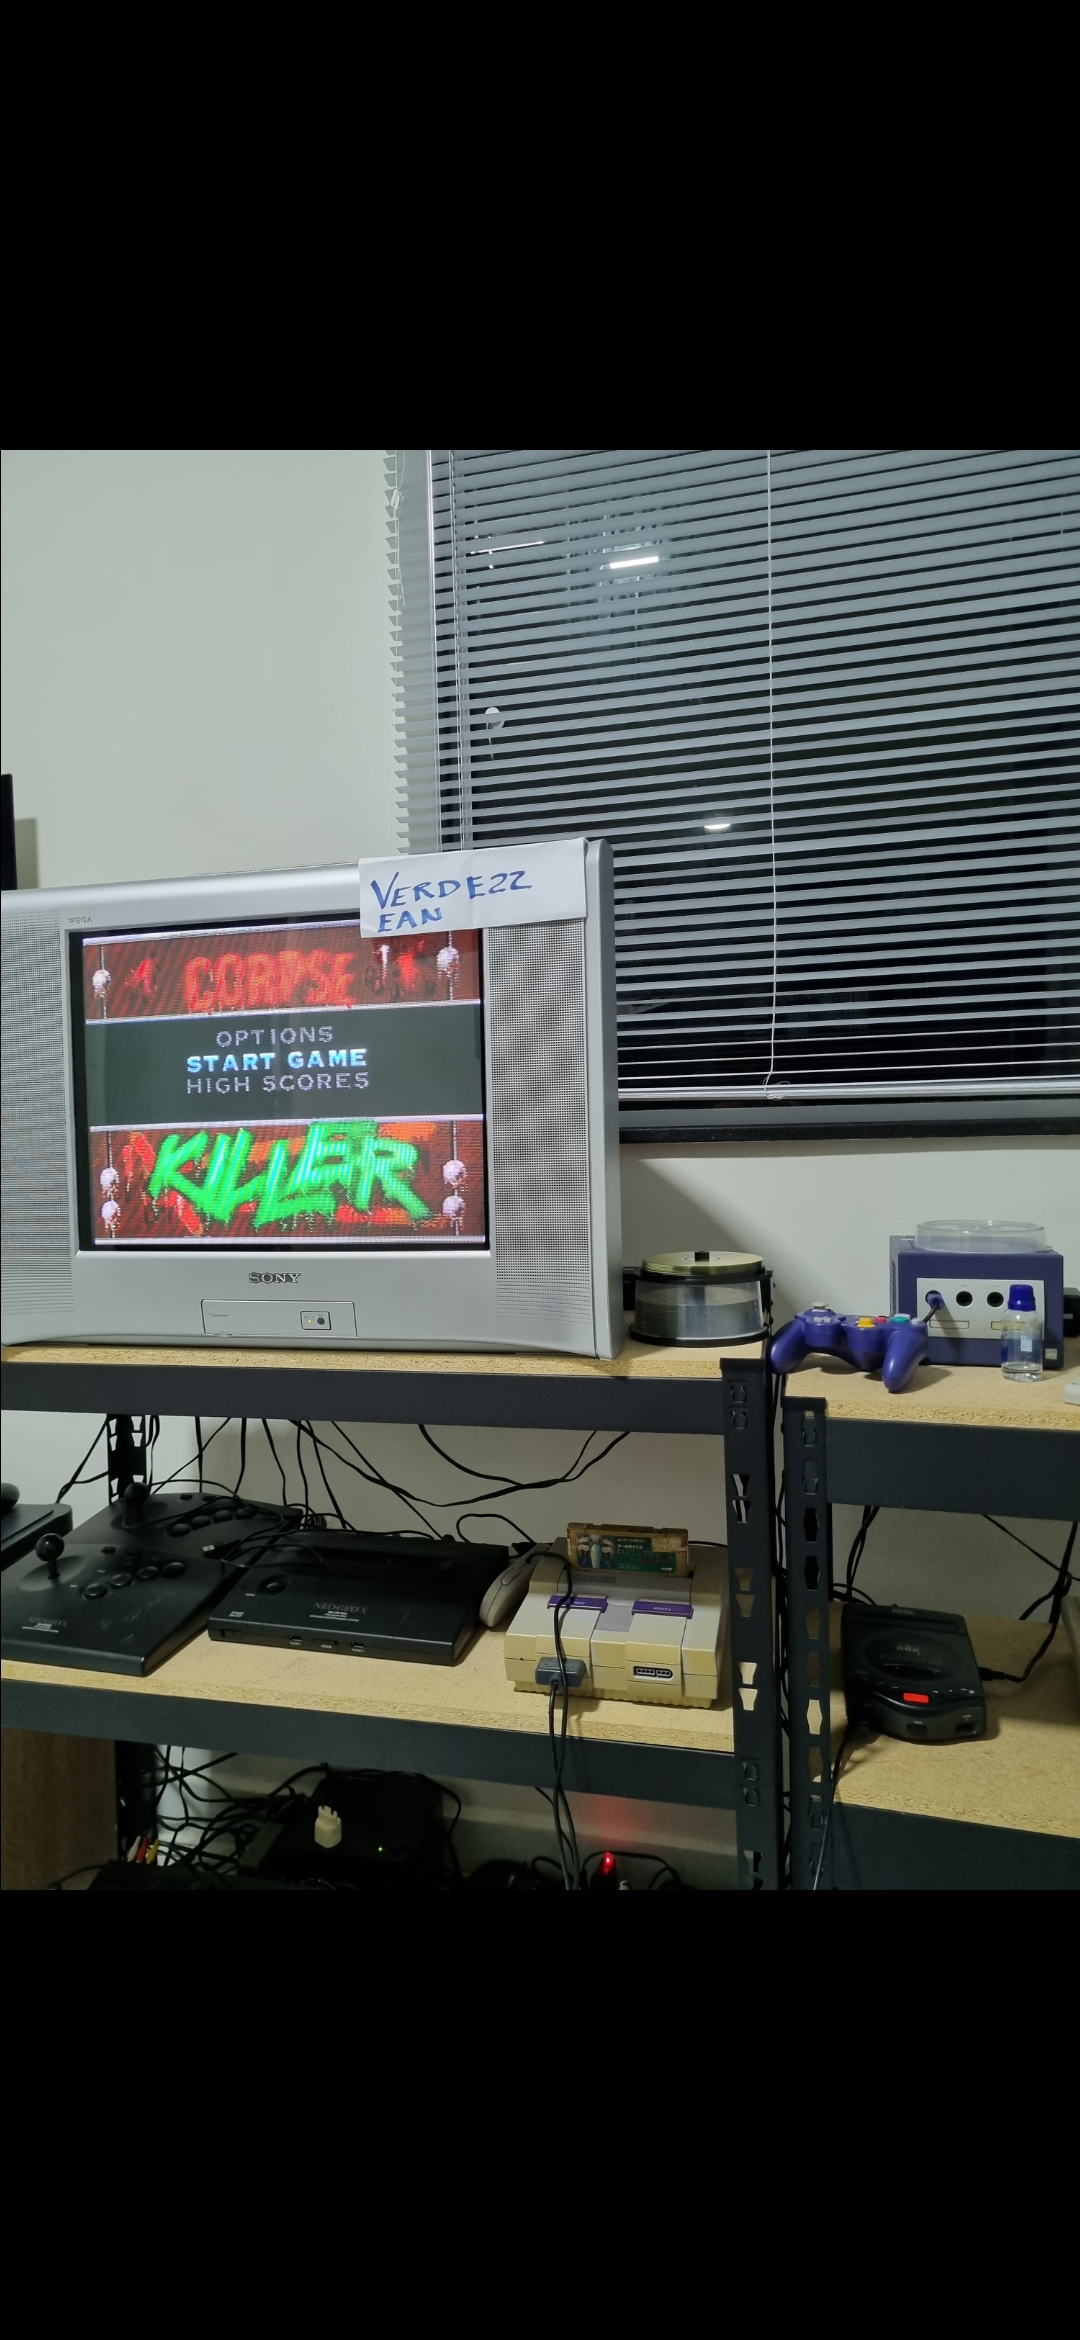 Corpse Killer [Sega CD] 1,134,717 points